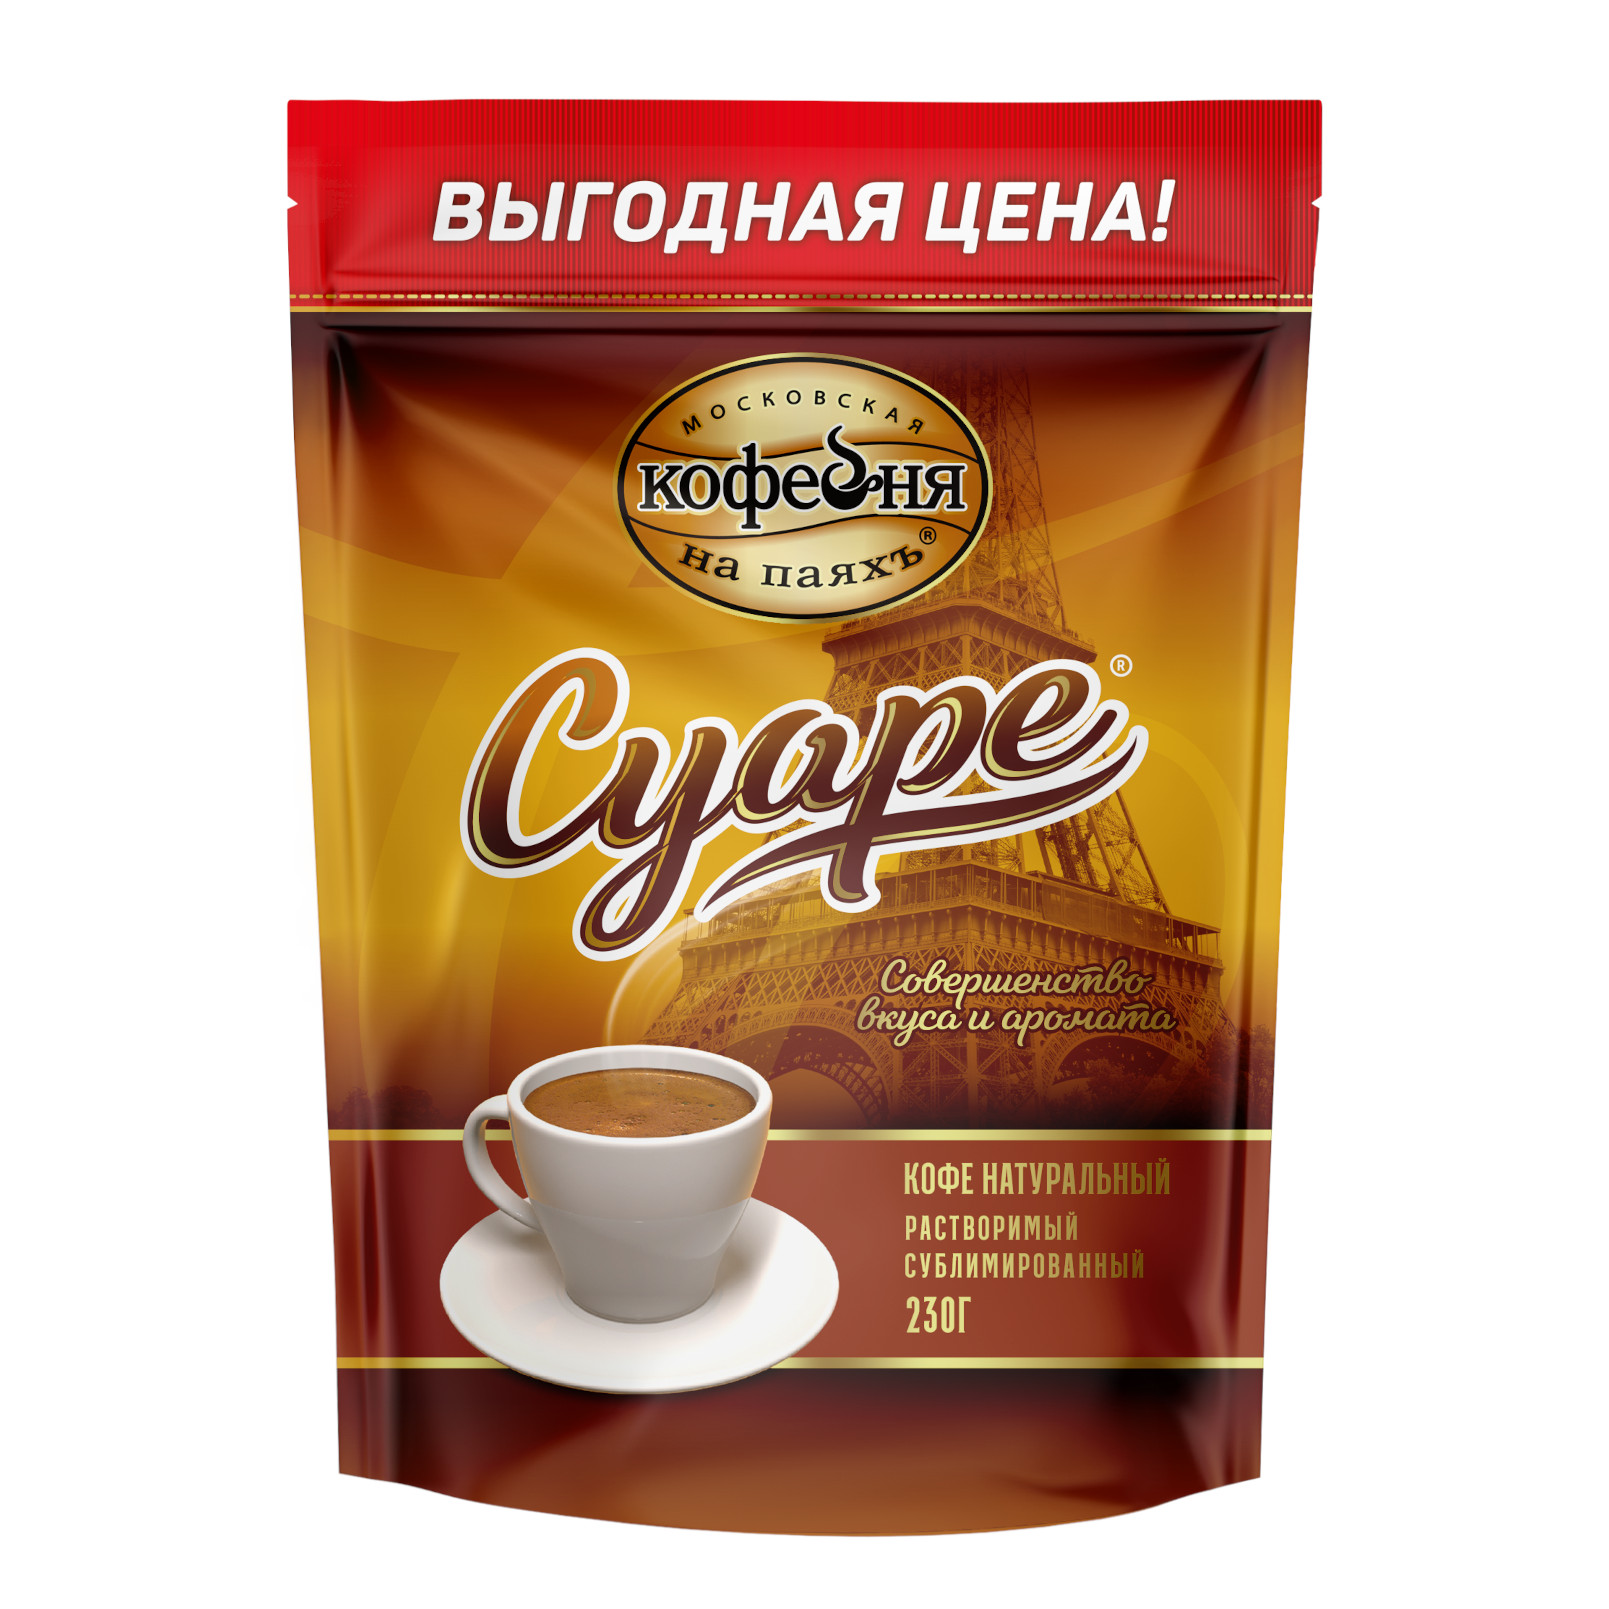 Кофе растворимый Московская Кофейня на ПаяхЪ Суаре 2 шт по 230 грамм